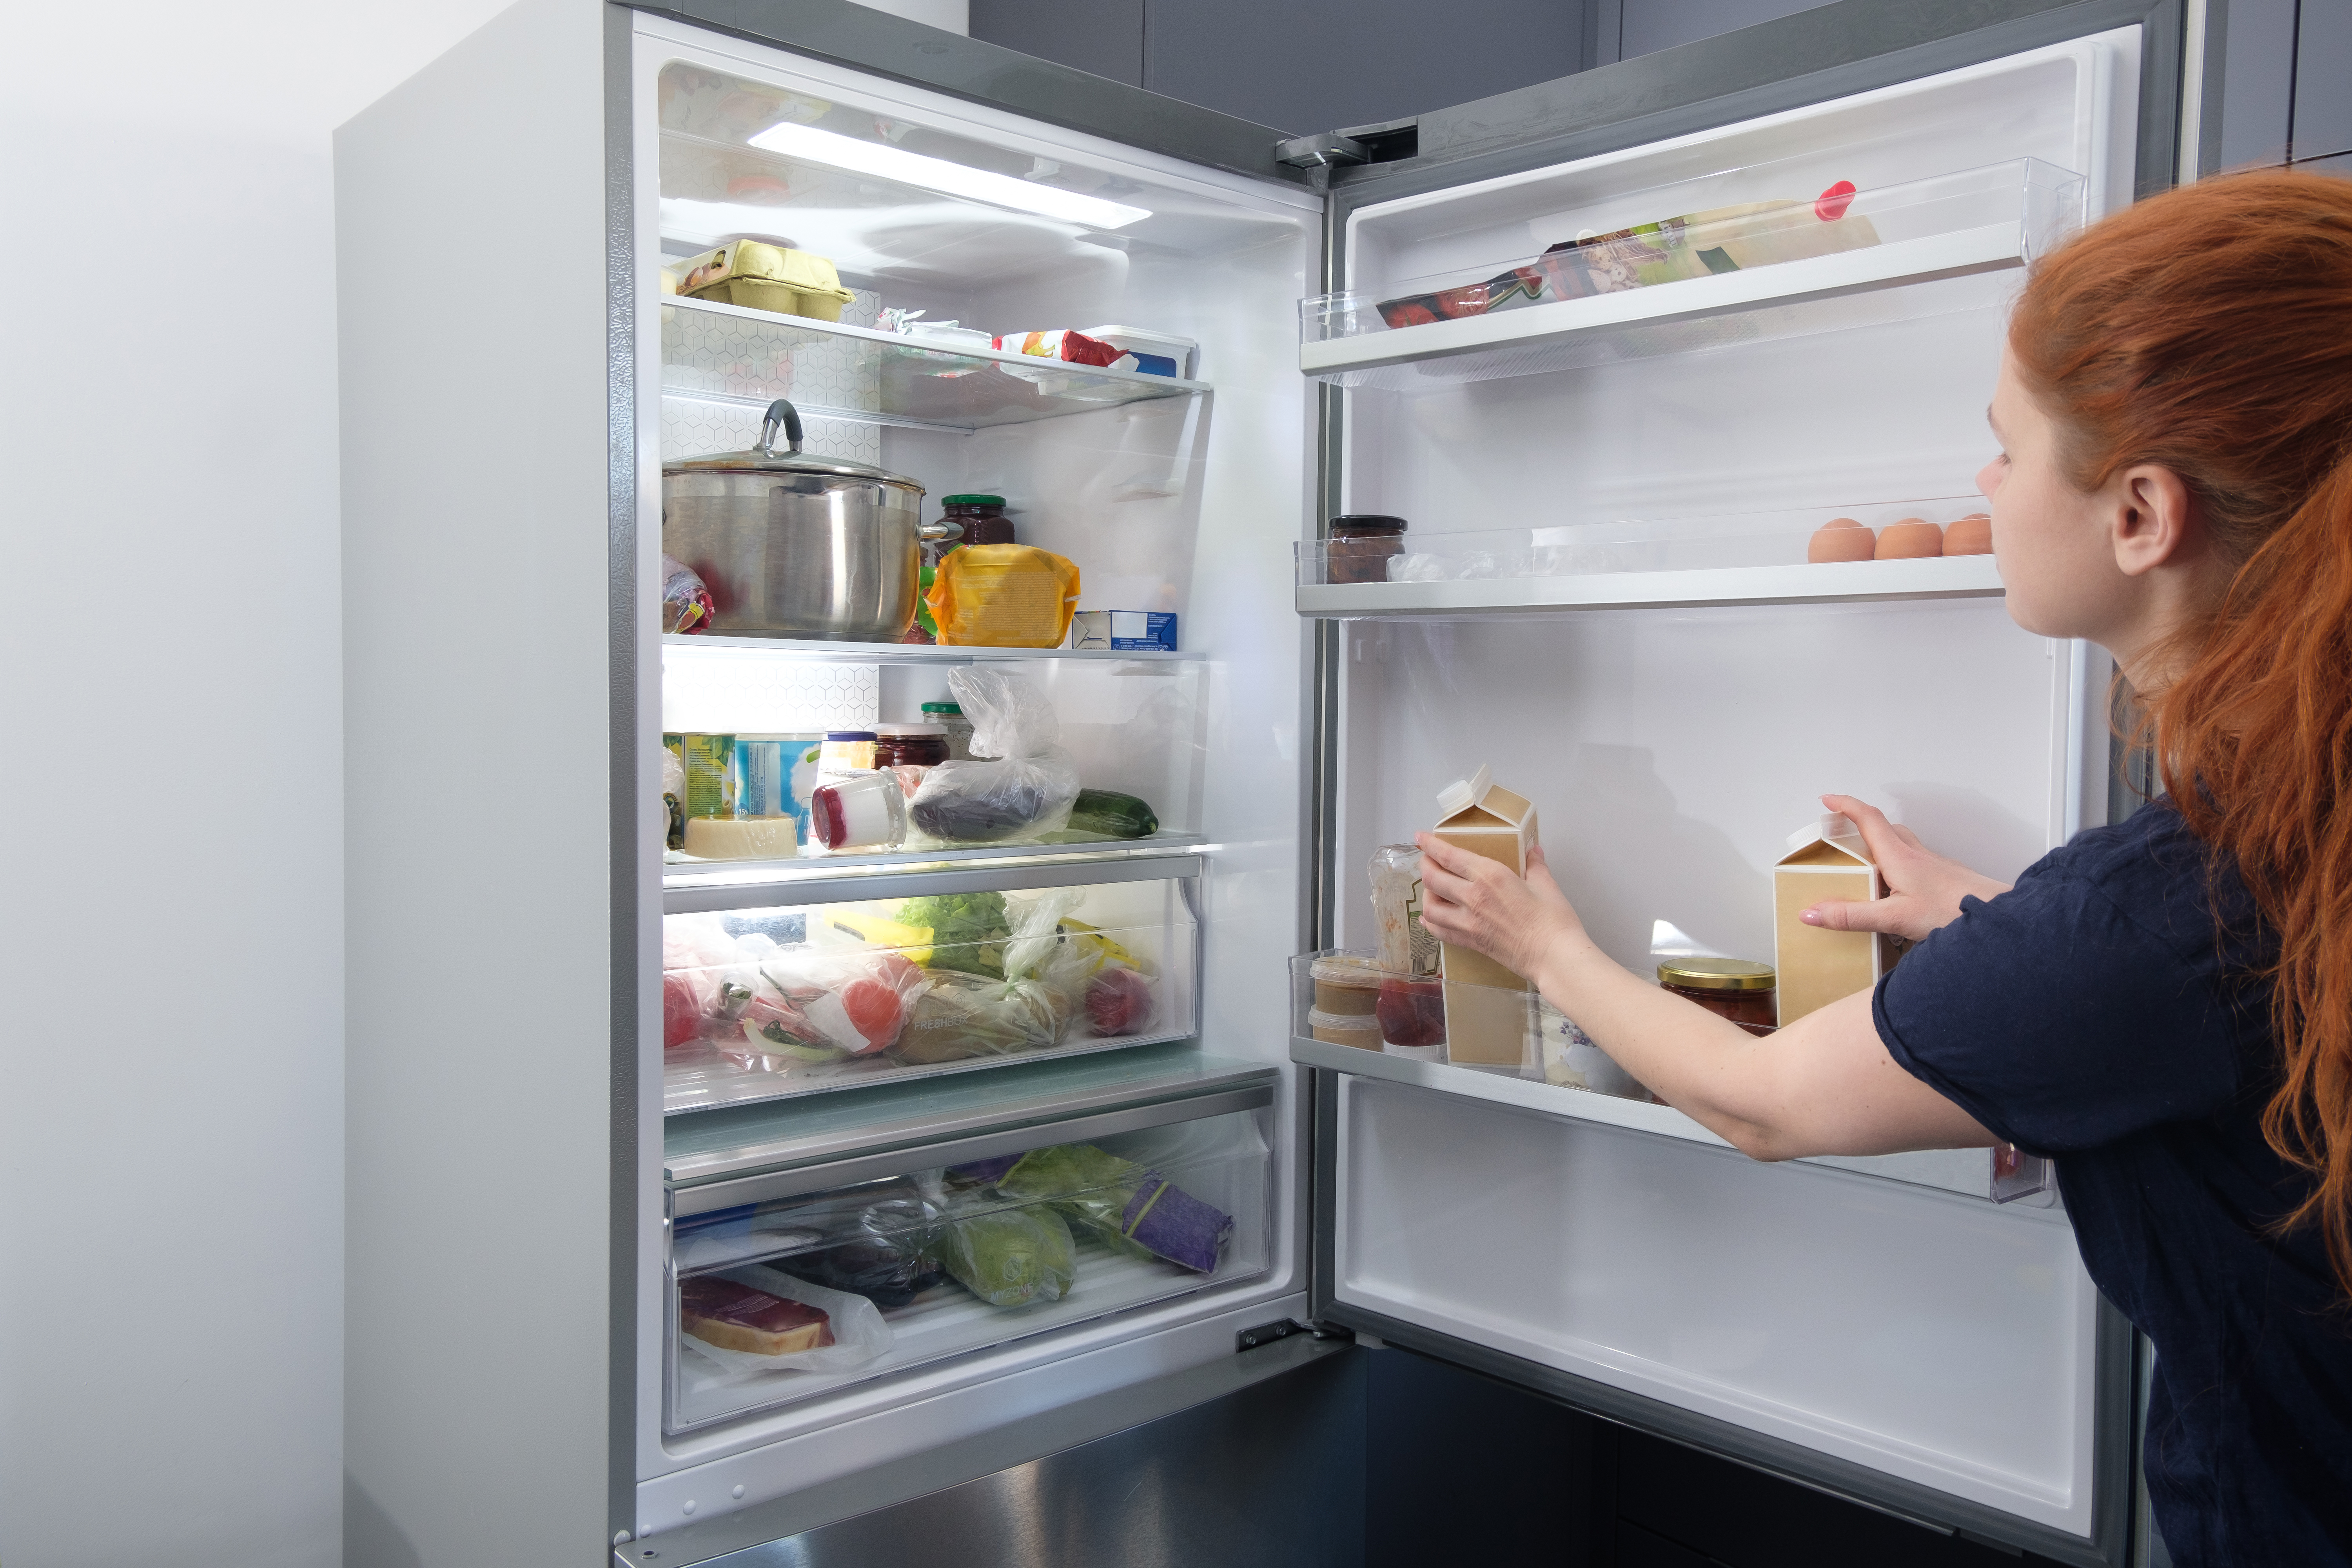 De ce să nu ții laptele pe ușa frigiderului. Unde trebuie să așezi fructele și ouăle